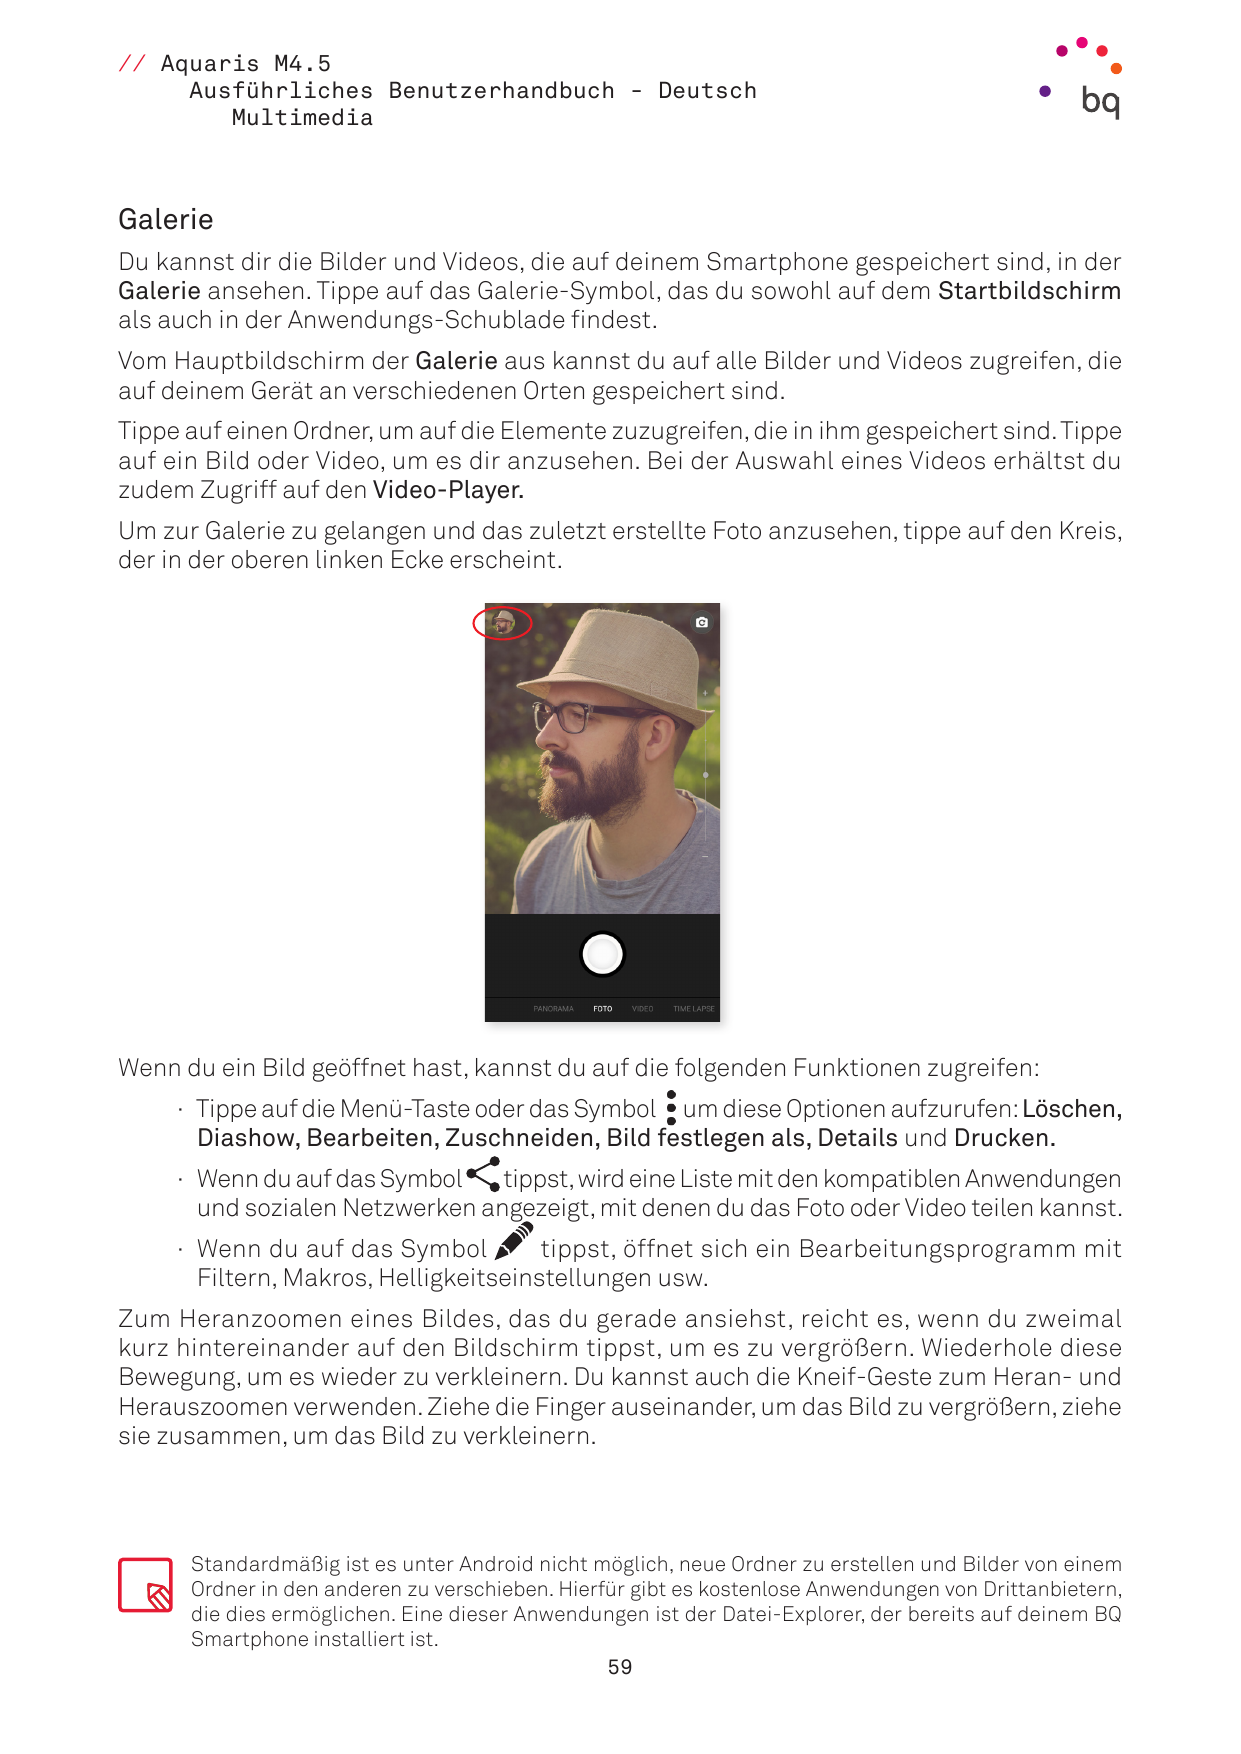 // Aquaris M4.5Ausführliches Benutzerhandbuch - DeutschMultimediaGalerieDu kannst dir die Bilder und Videos, die auf deinem Smar